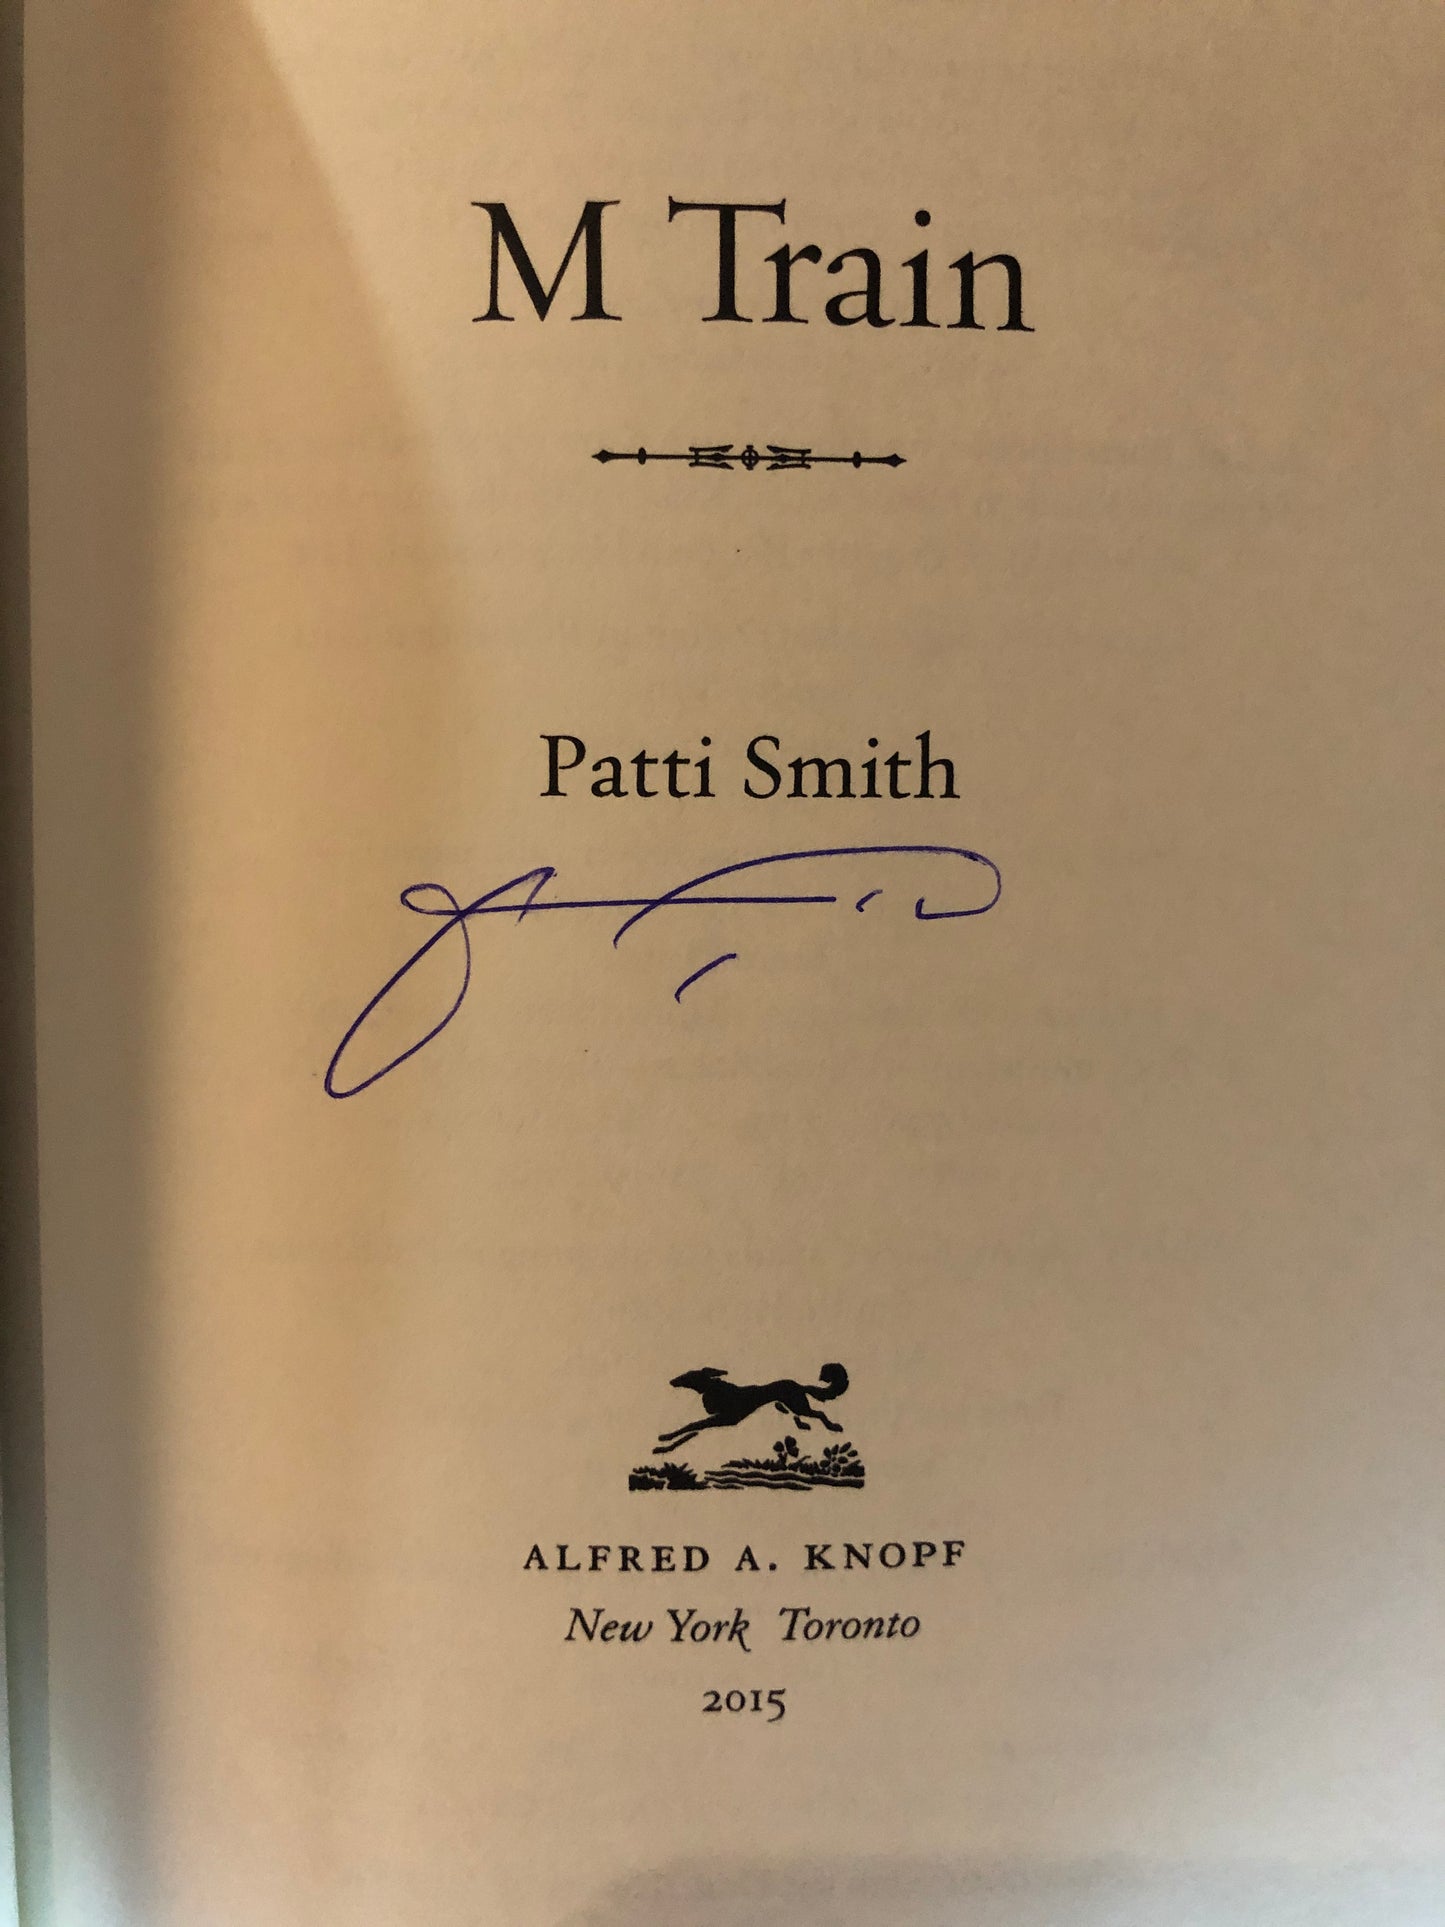 Patti Smith "M Train" Signed Book